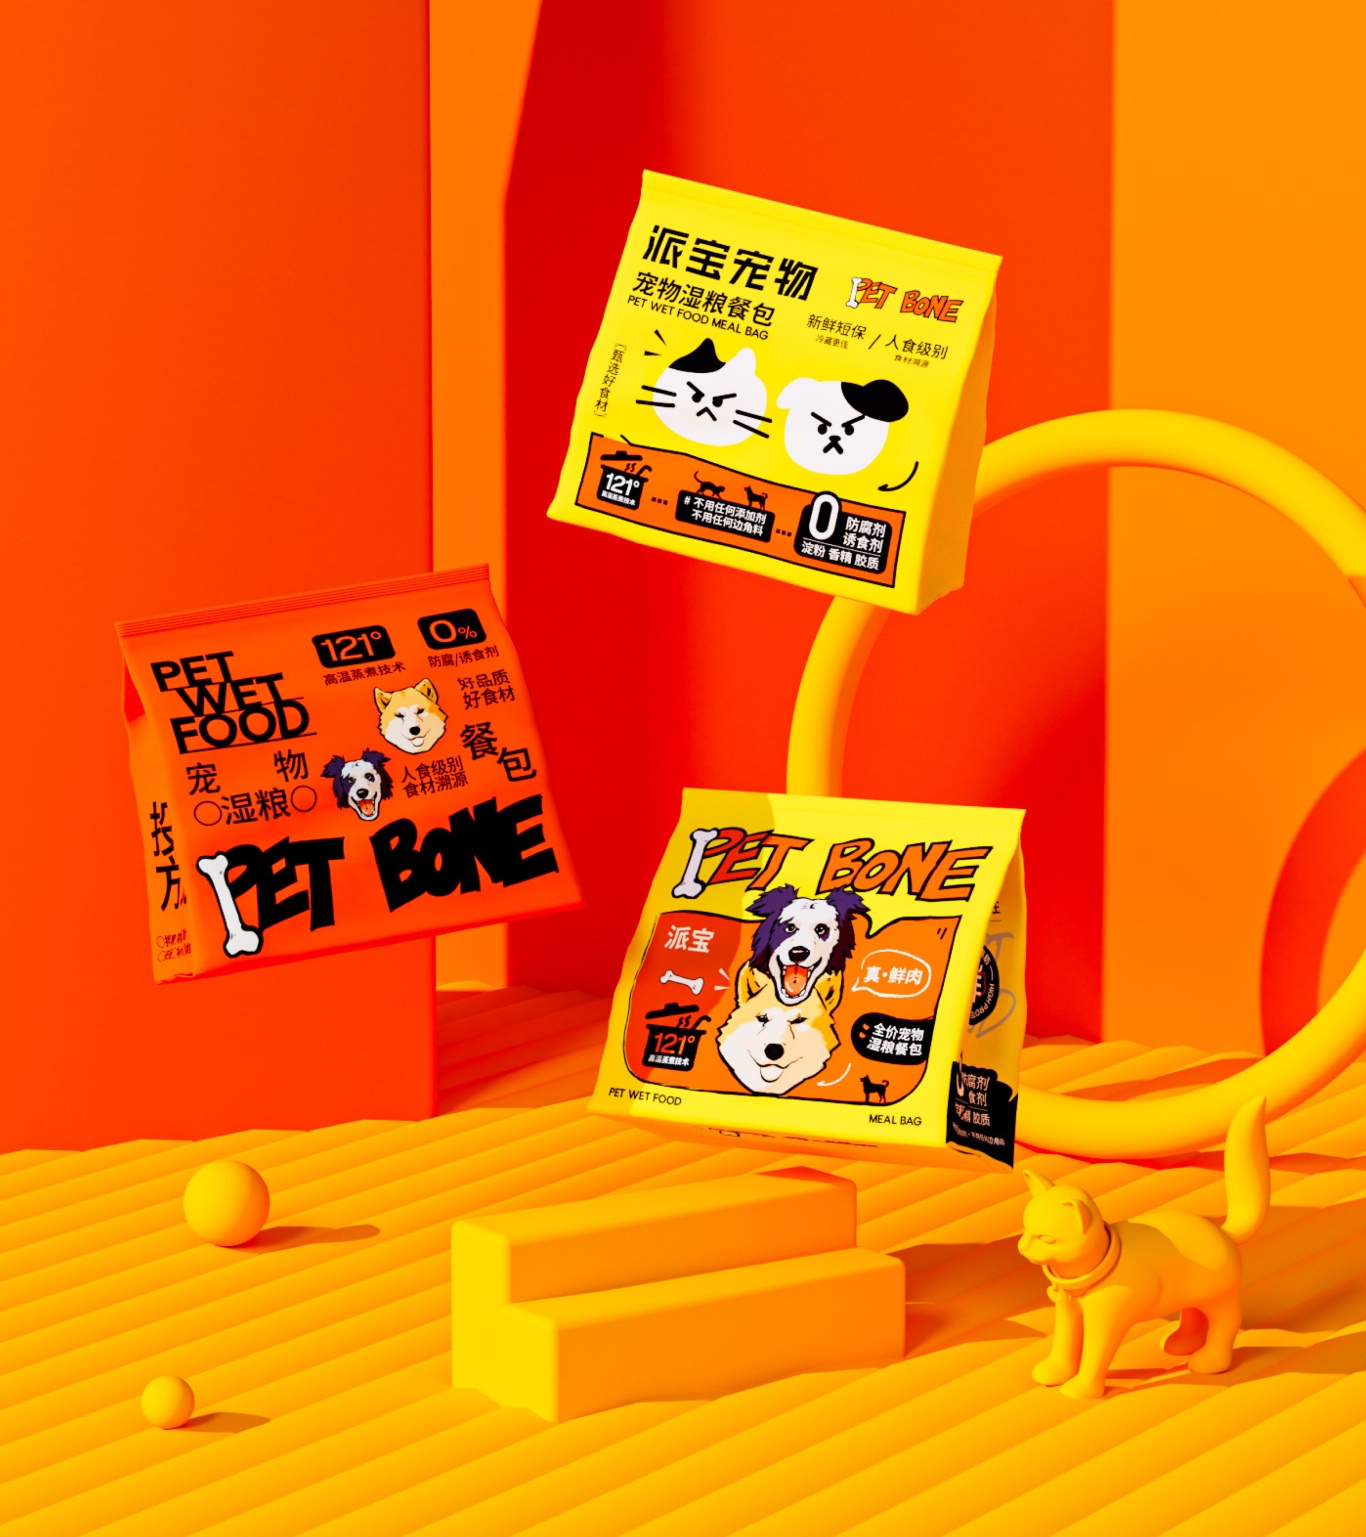 PET BONE派宝宠物 X 湿粮营养餐包系列包装设计图15